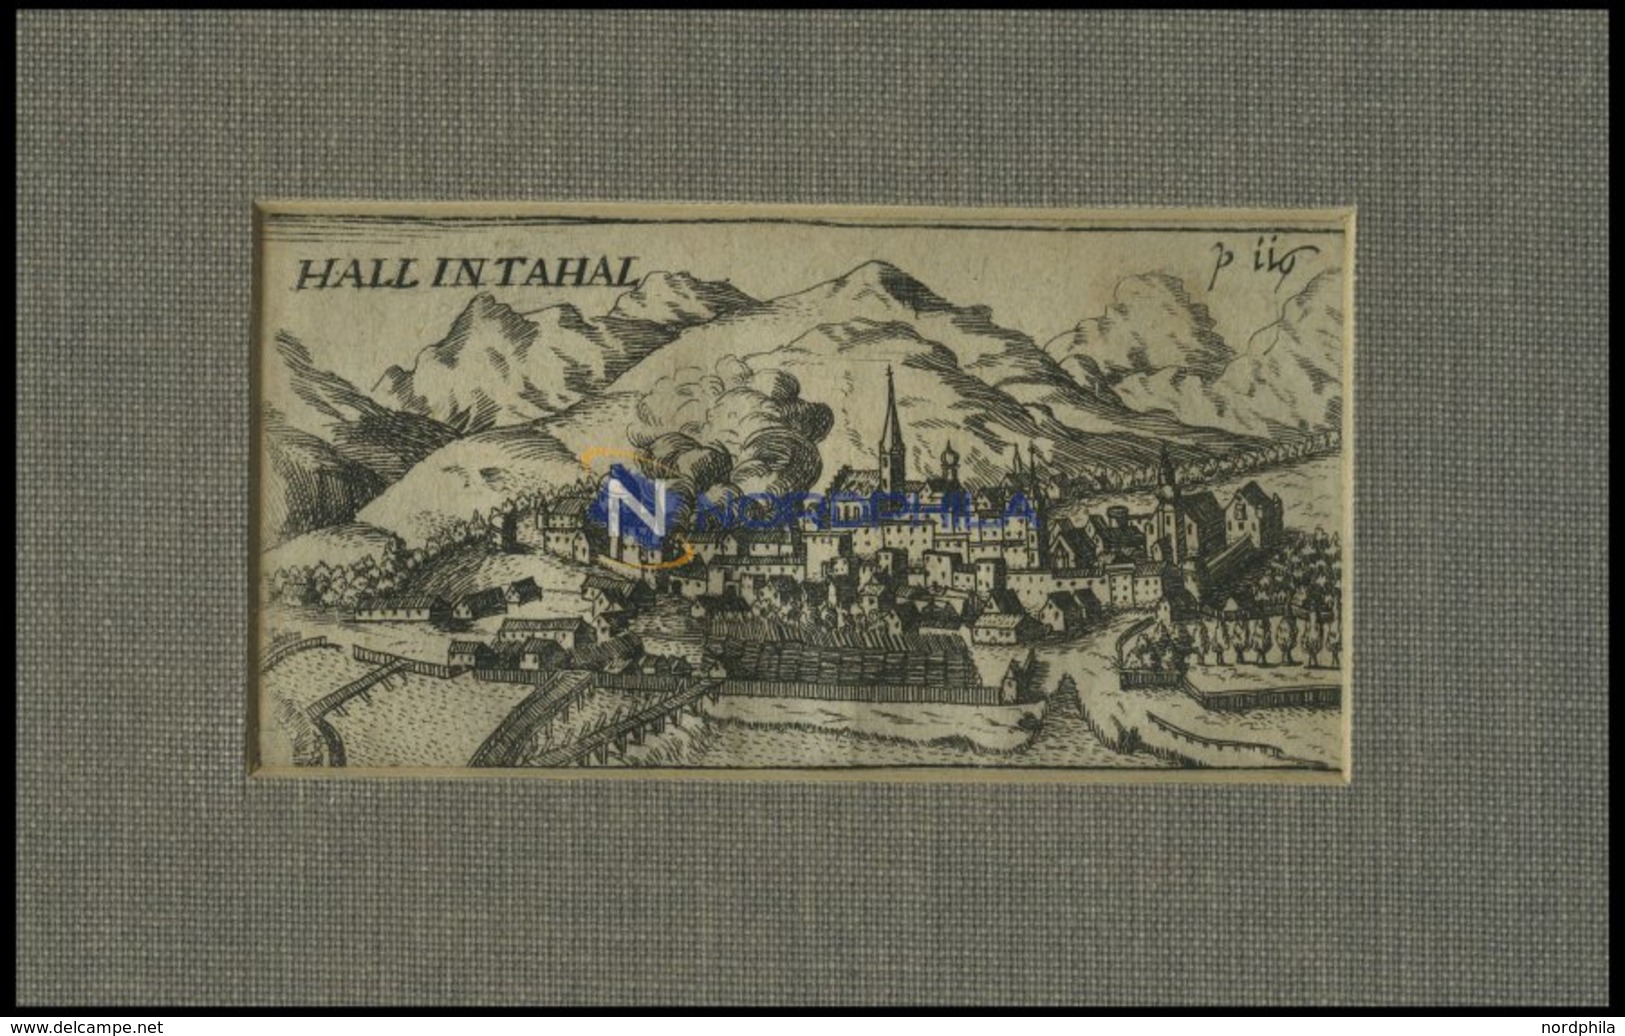 HALL, Gesamtansicht, Kupferstich Von Hoffmann Von 1685 - Lithographien